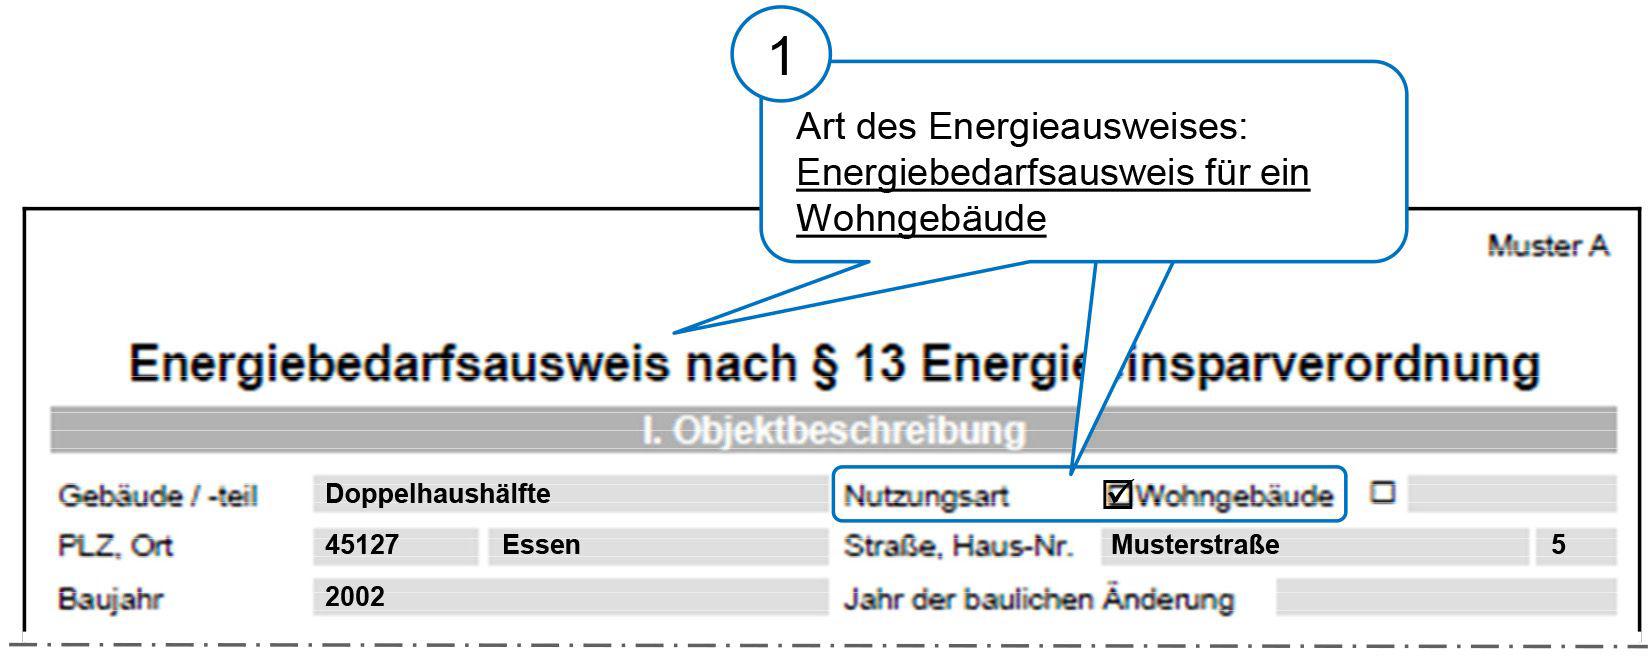 Die folgenden Erläuterungen beziehen sich auf: Energiebedarfsausweise für Wohngebäude nach der EnEV 2002 1 Art des Energieausweises Um welche Art des Energieausweises es sich handelt, steht auf dem